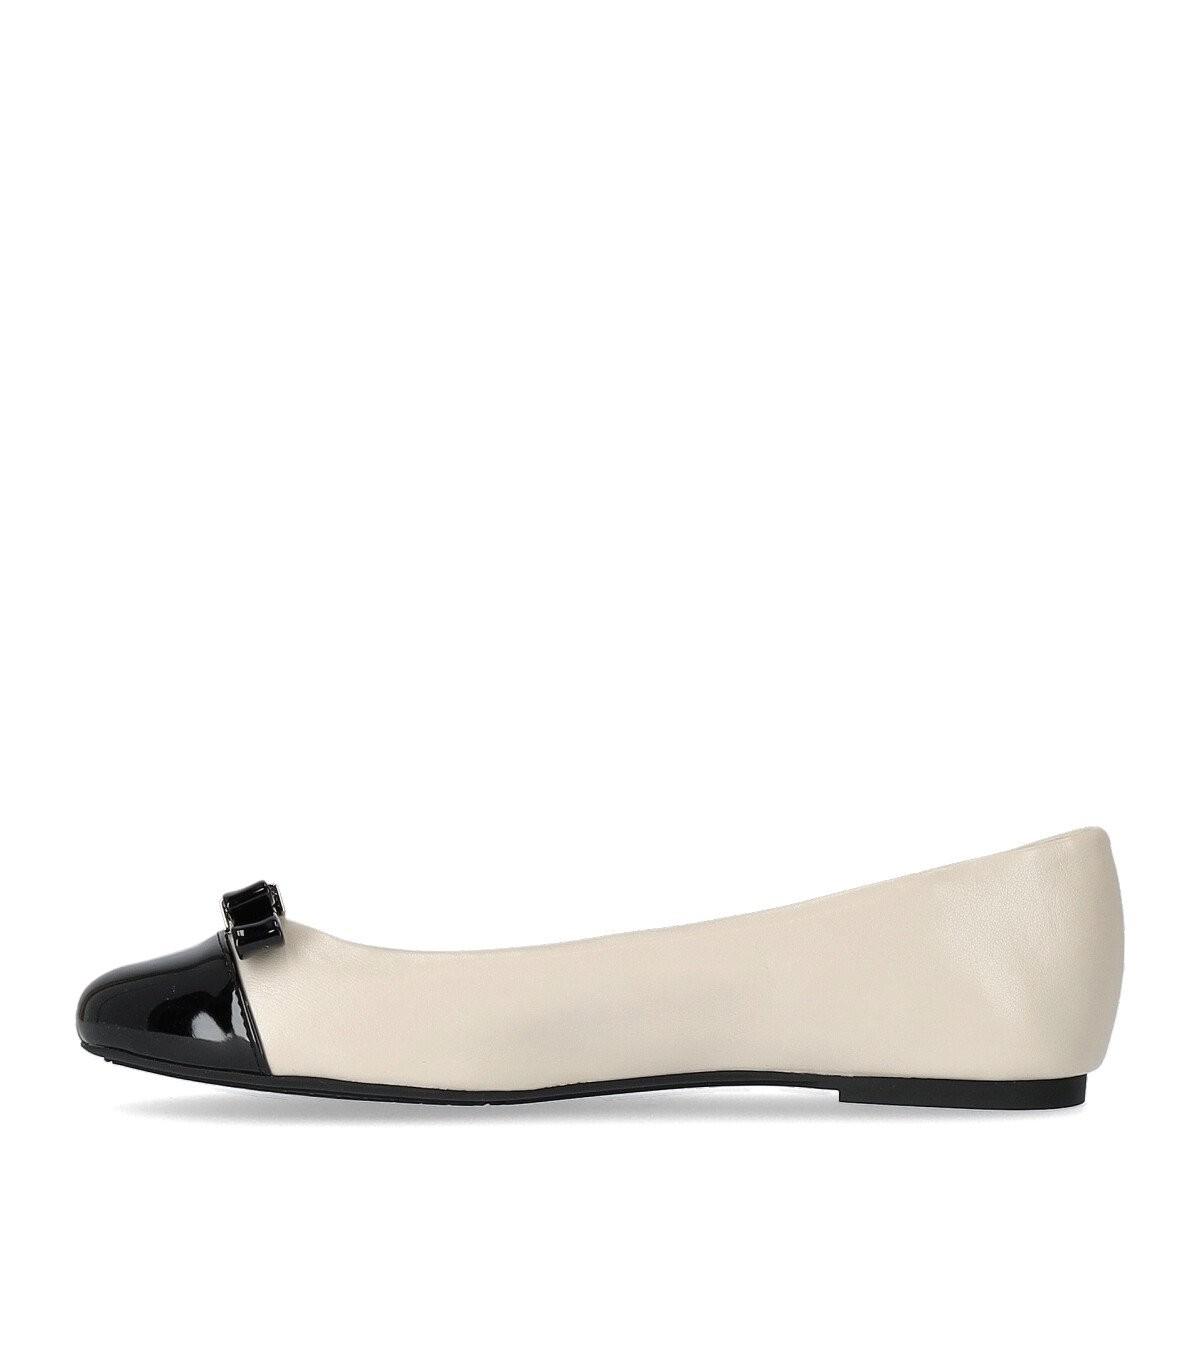 Michael Kors Andrea Cream Ballet Flat Shoe in White | Lyst